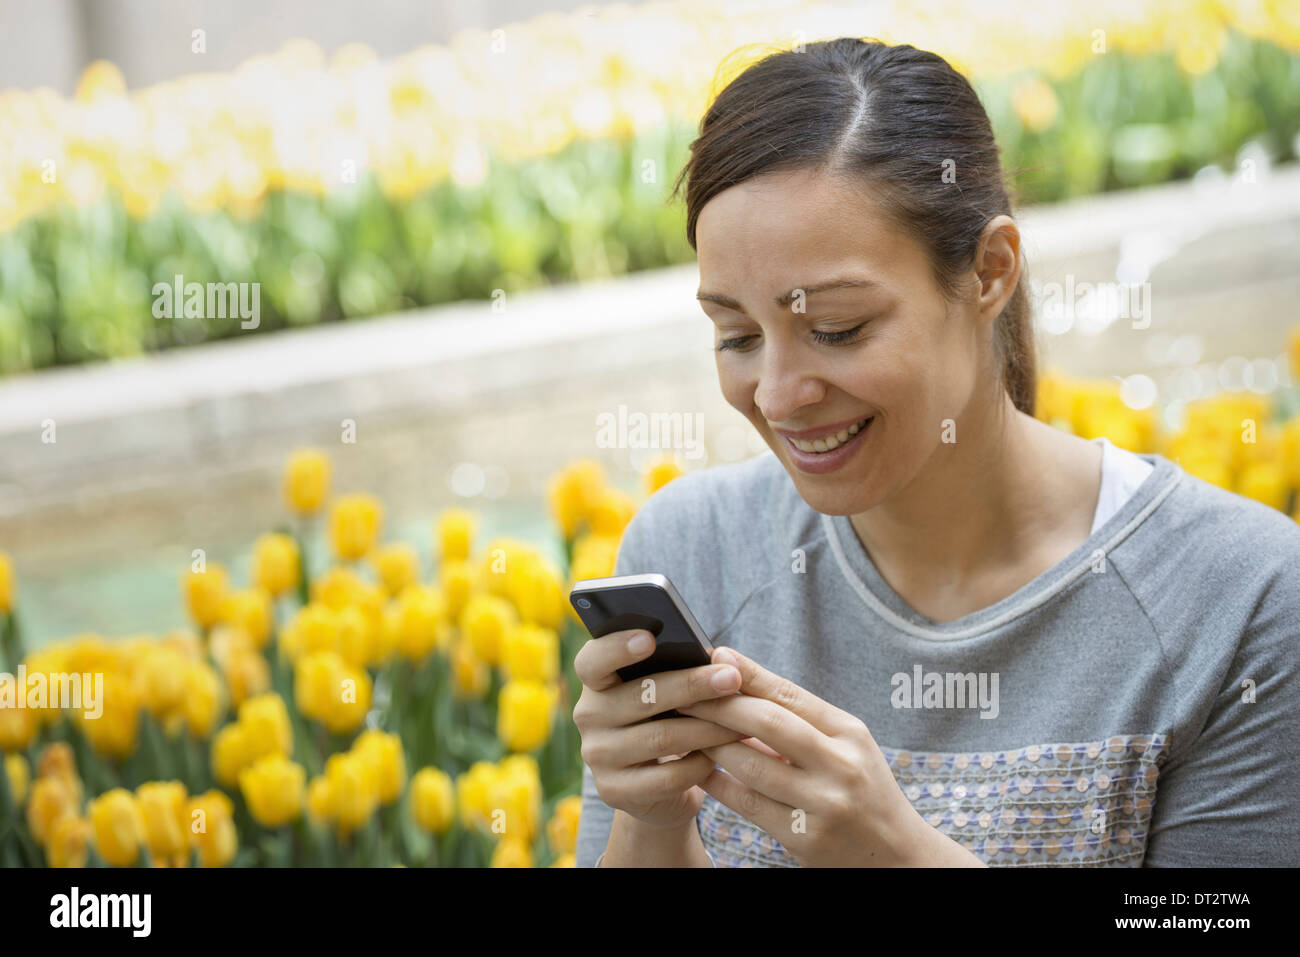 Urban Lifestyle A Frau im Park durch ein Bett von gelben Tulpen mit ihrem Mobiltelefon Stockfoto